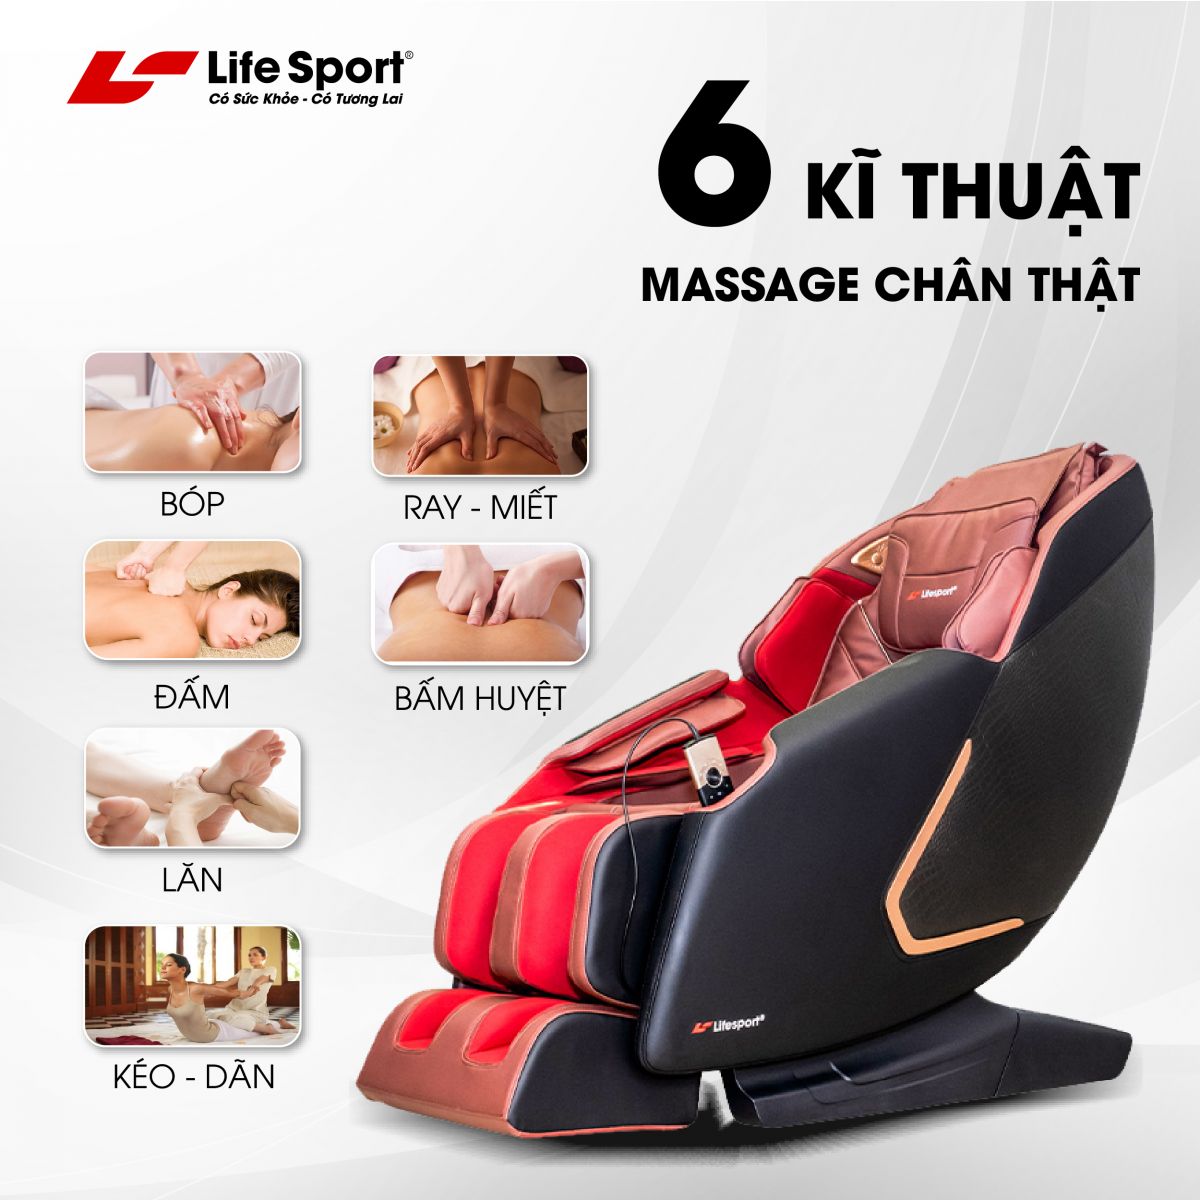 Chăm sóc sức khỏe cùng với Ghế Massage Lifesport LS-900